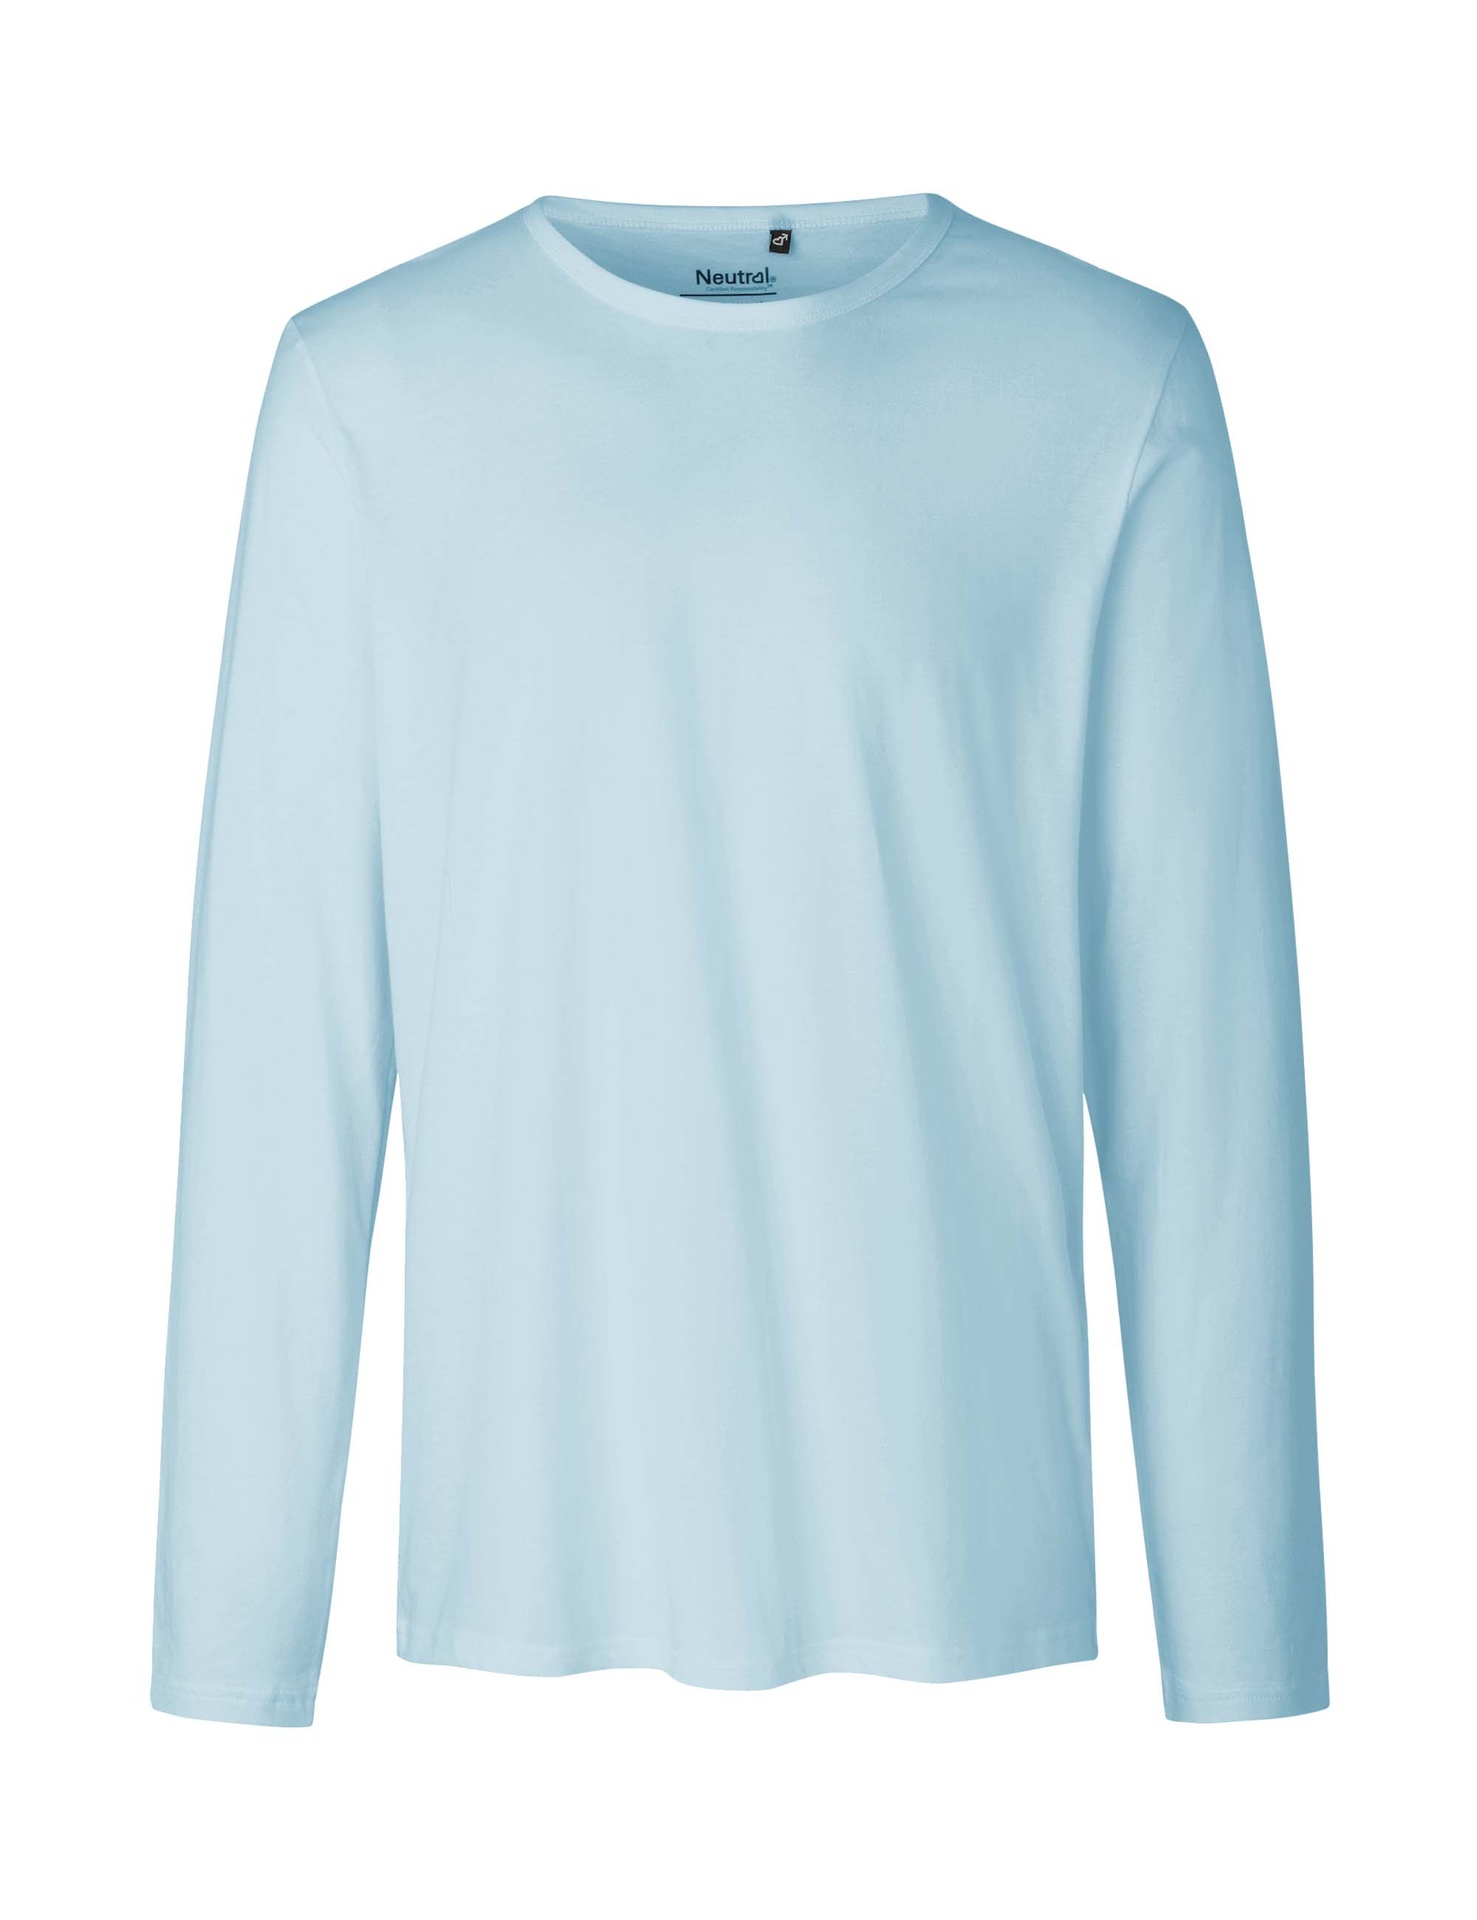 [PR/02461] Mens Long Sleeve T-Shirt (Light Blue 69, XL)